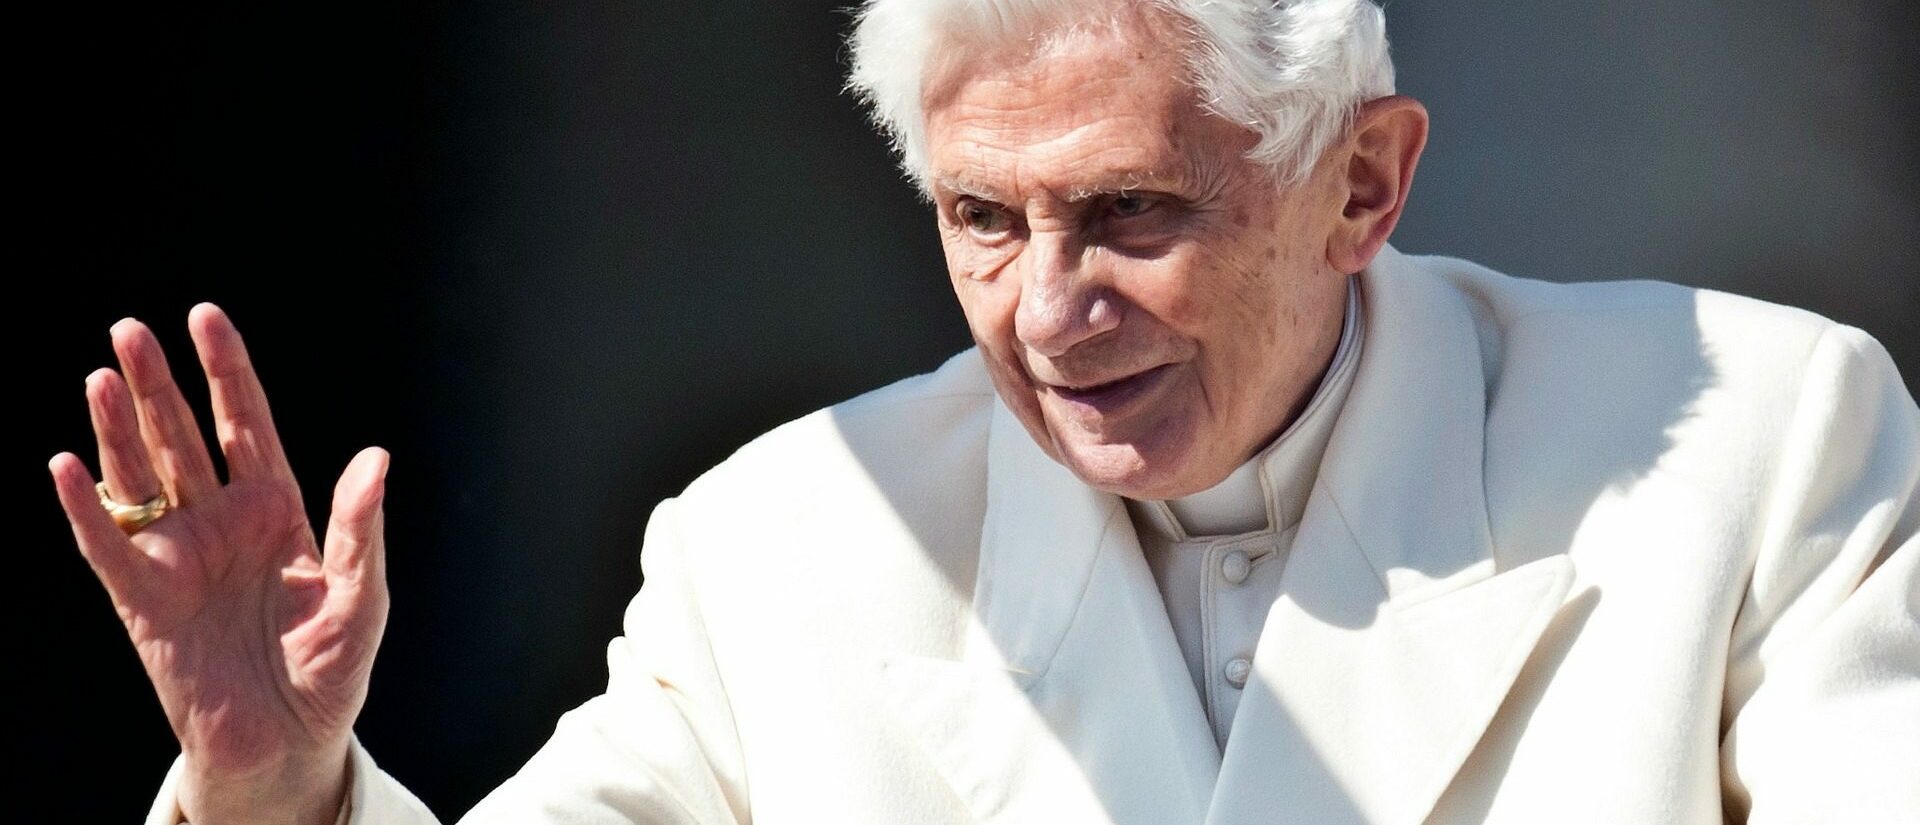 Le pape émérite Benoît XVI a reçu environ un millier de lettres de condoléances à l'occasion du décès de son frères Georg  | © Catholic Church of England/Flickr/CC BY-NC-SA 2.0